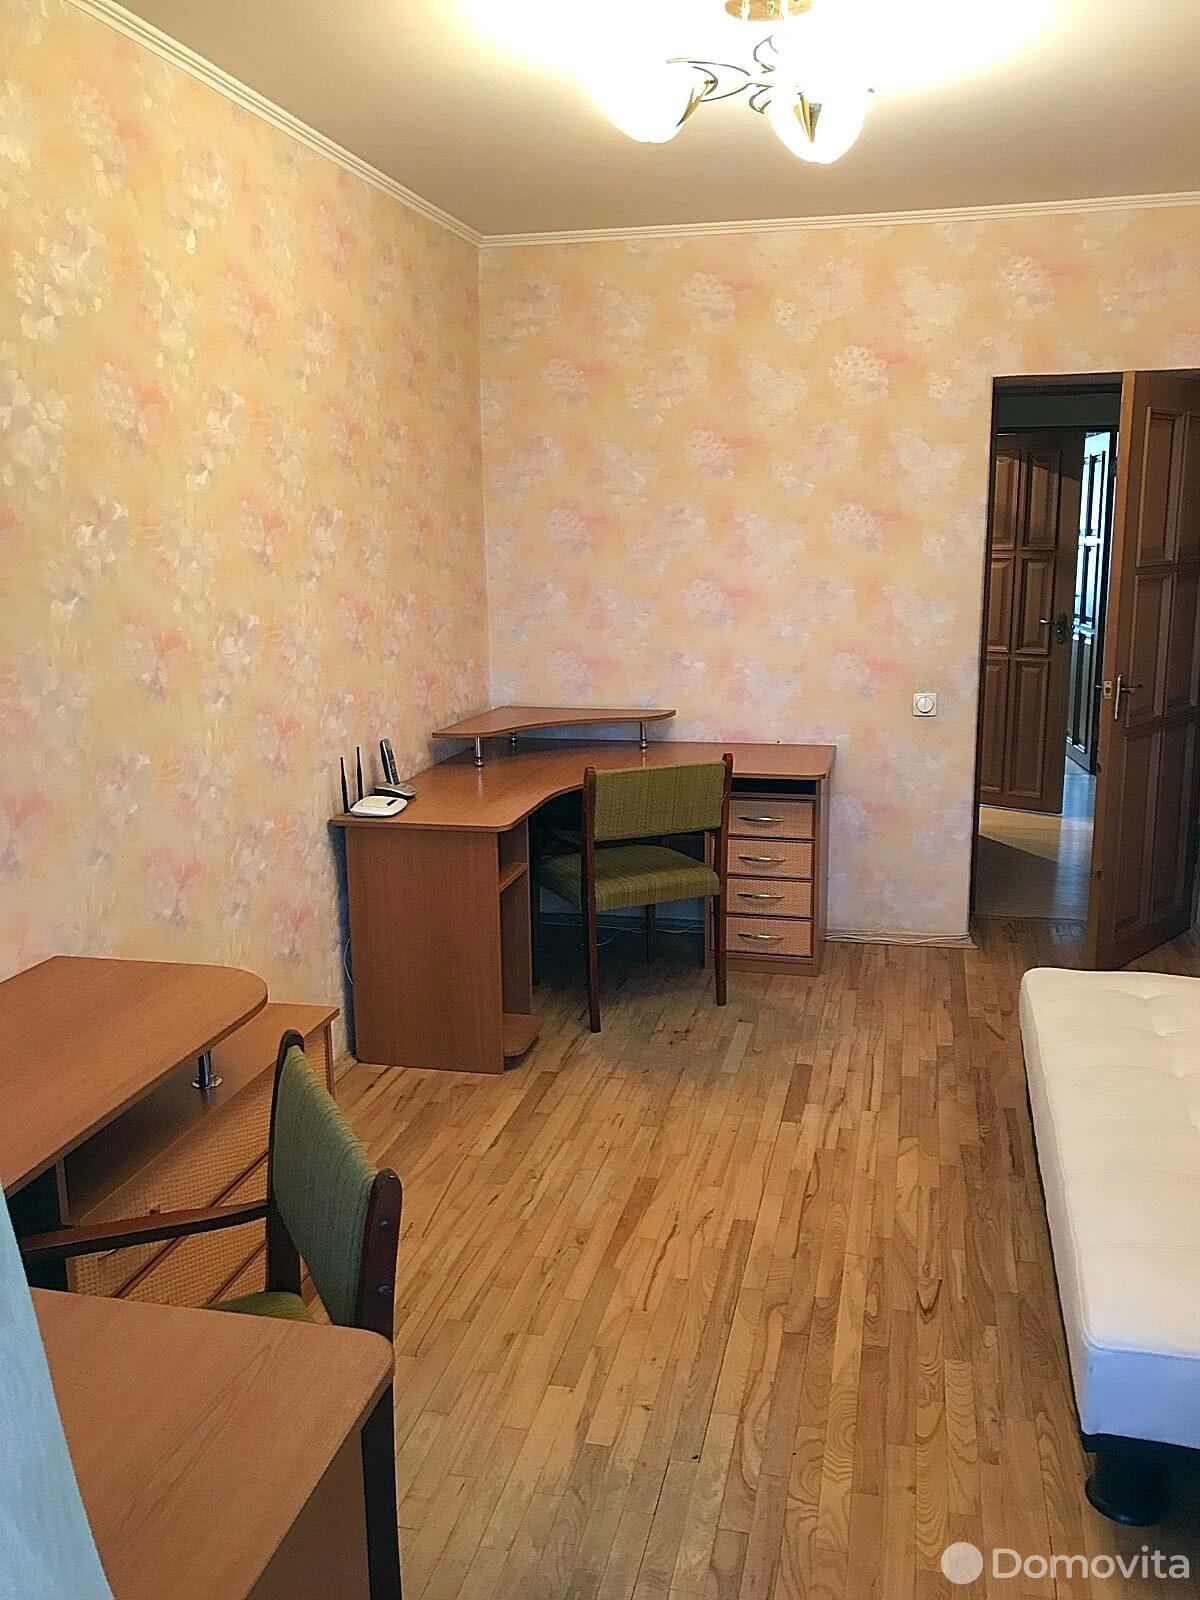 квартира, Минск, ул. Нахимова, д. 19/1, стоимость аренды 1 425 р./мес.